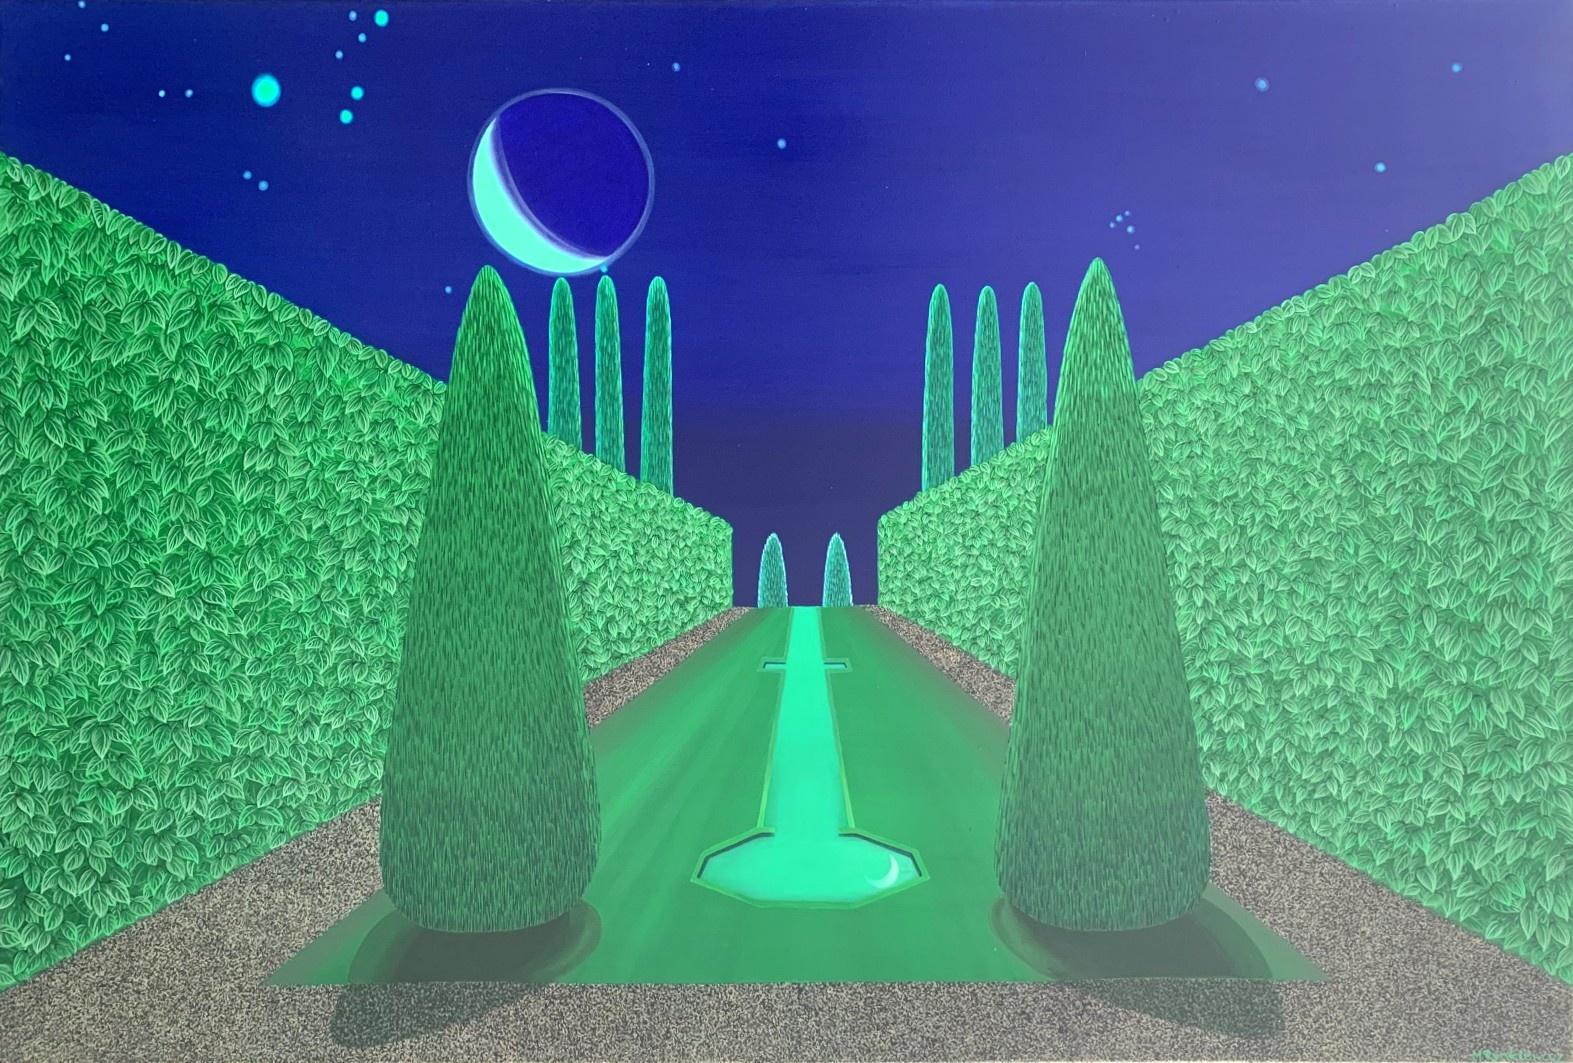 Le jardin du ciel de la nuit - Peinture à l'acrylique - Artiste polonais aux couleurs vives